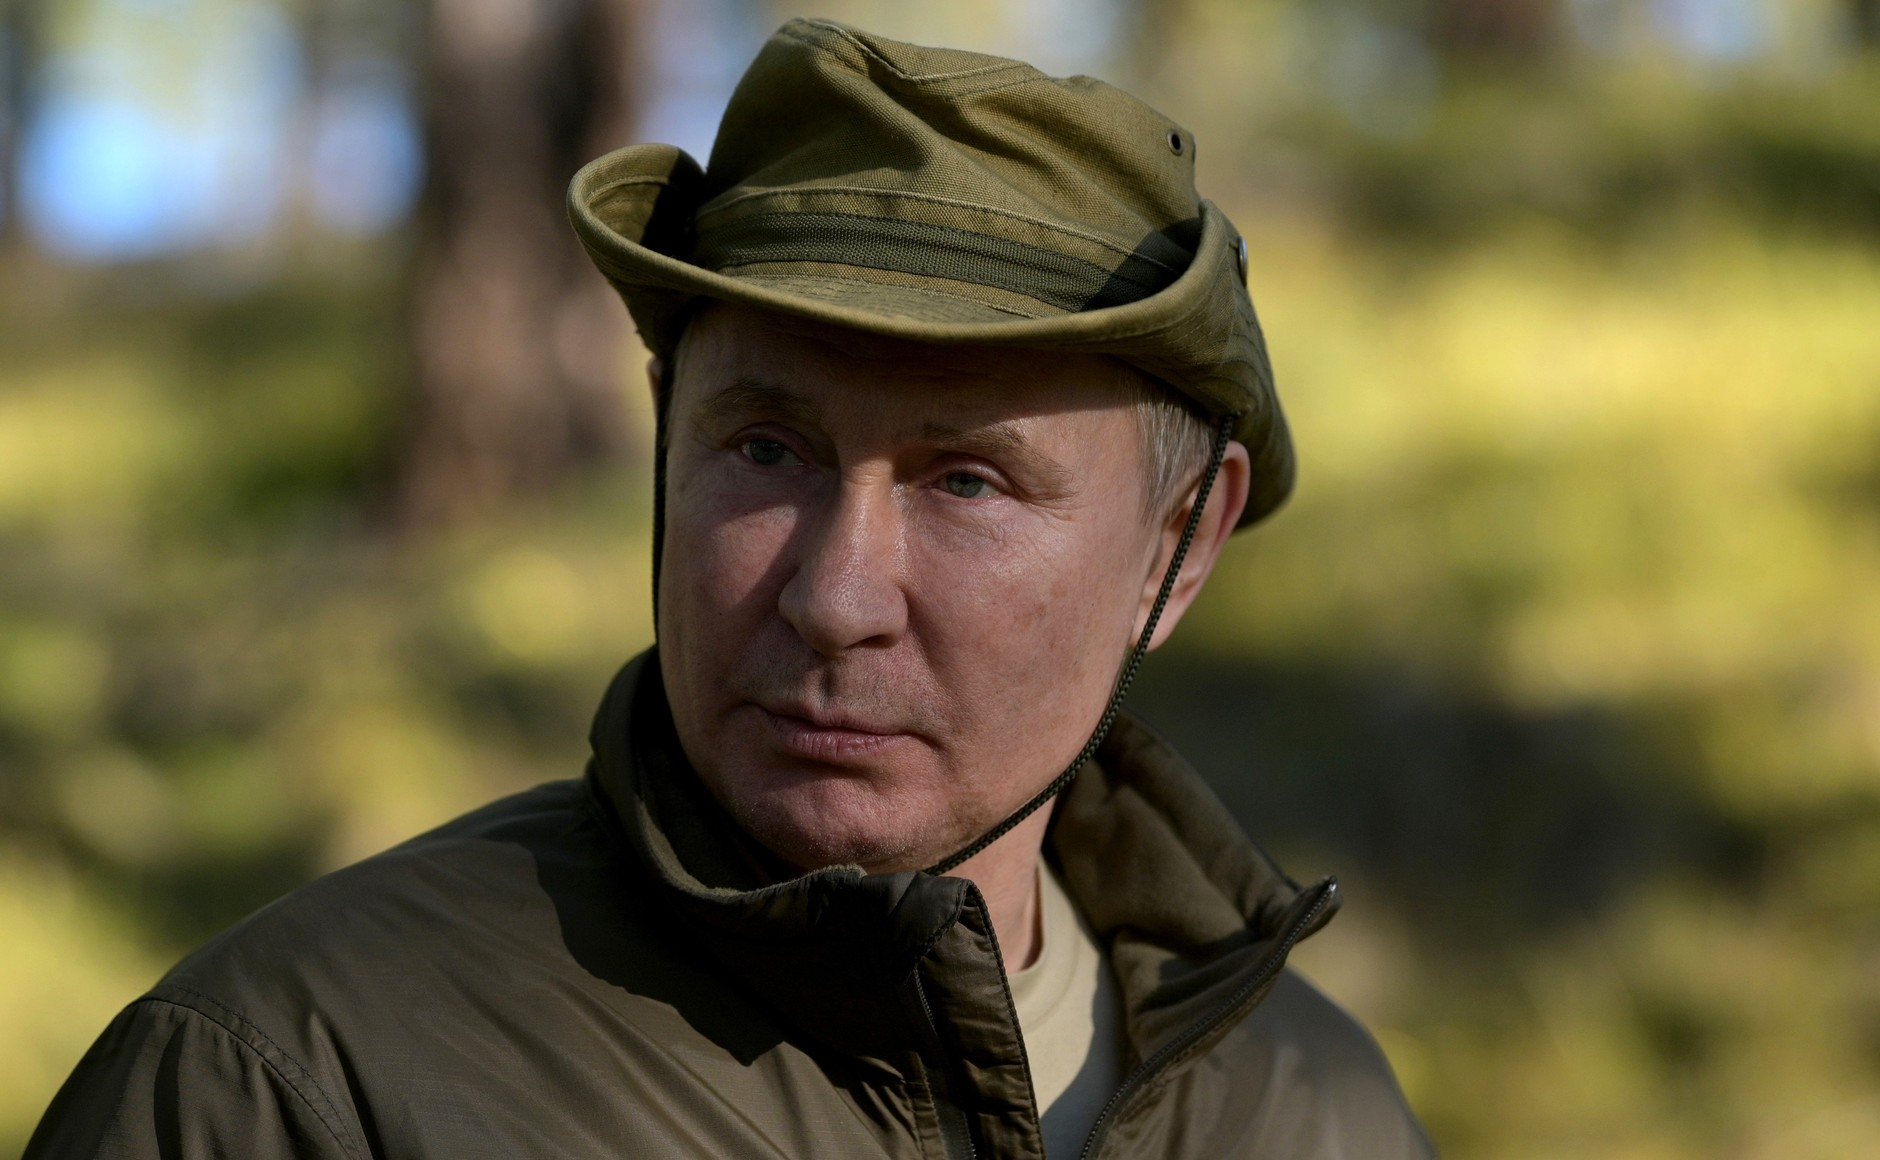 Путина заинтересовали туристические маршруты по России, на которых он ещё не бывал